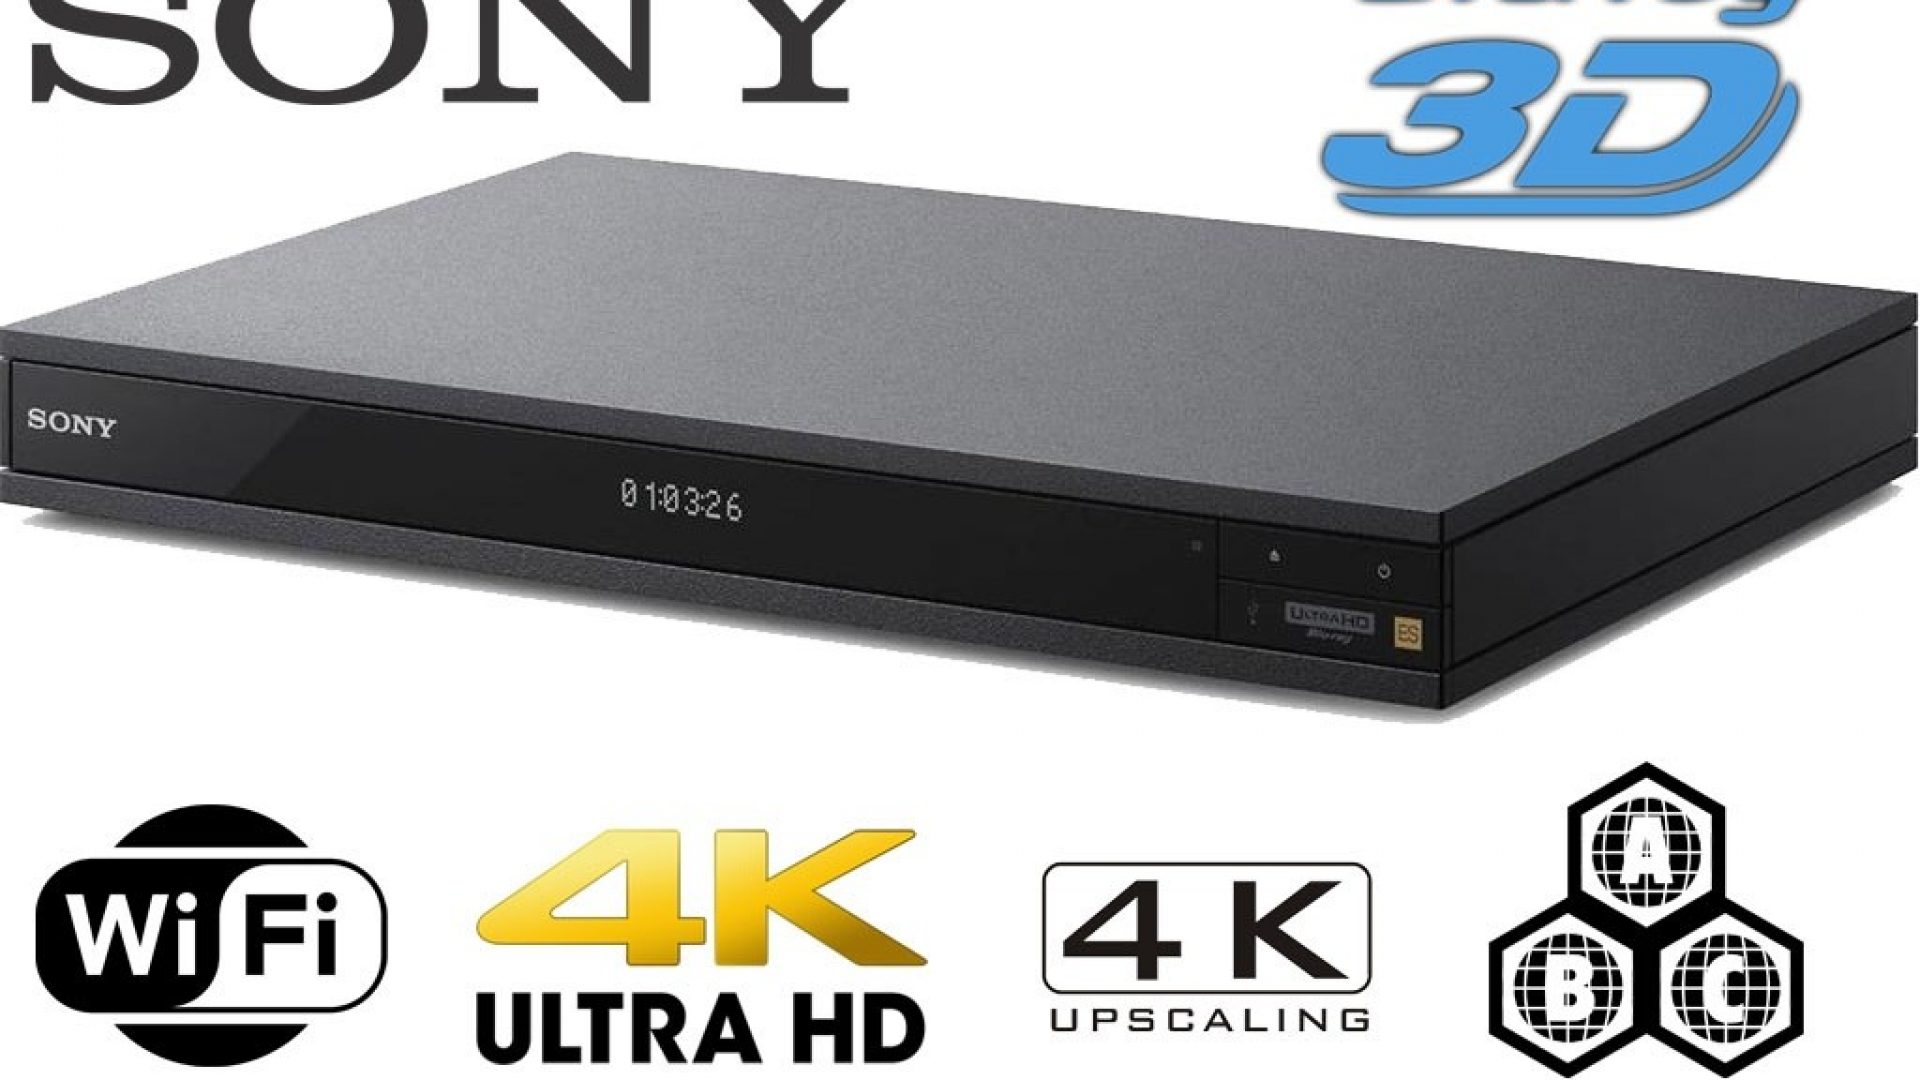 Continente Químico rasguño Sony presenta nuevo reproductor Blu-ray Disc™ UBP-X1100ES